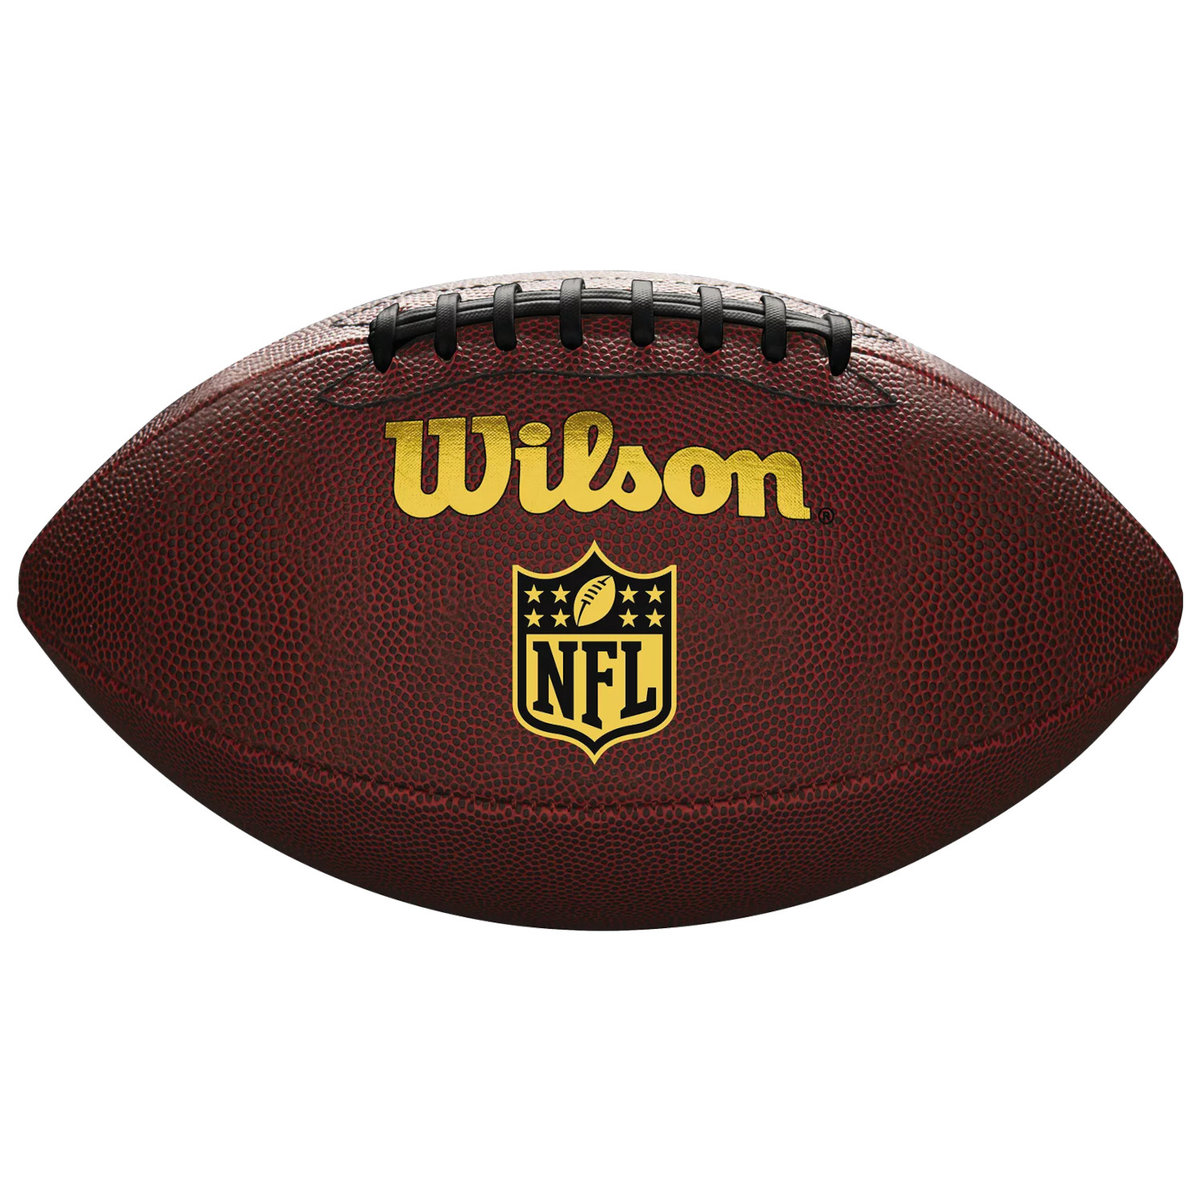 Wilson Nfl Tailgate Football Wtf1675Xb, Unisex, Piłki Do Futbolu Amerykańskiego, Brązowe